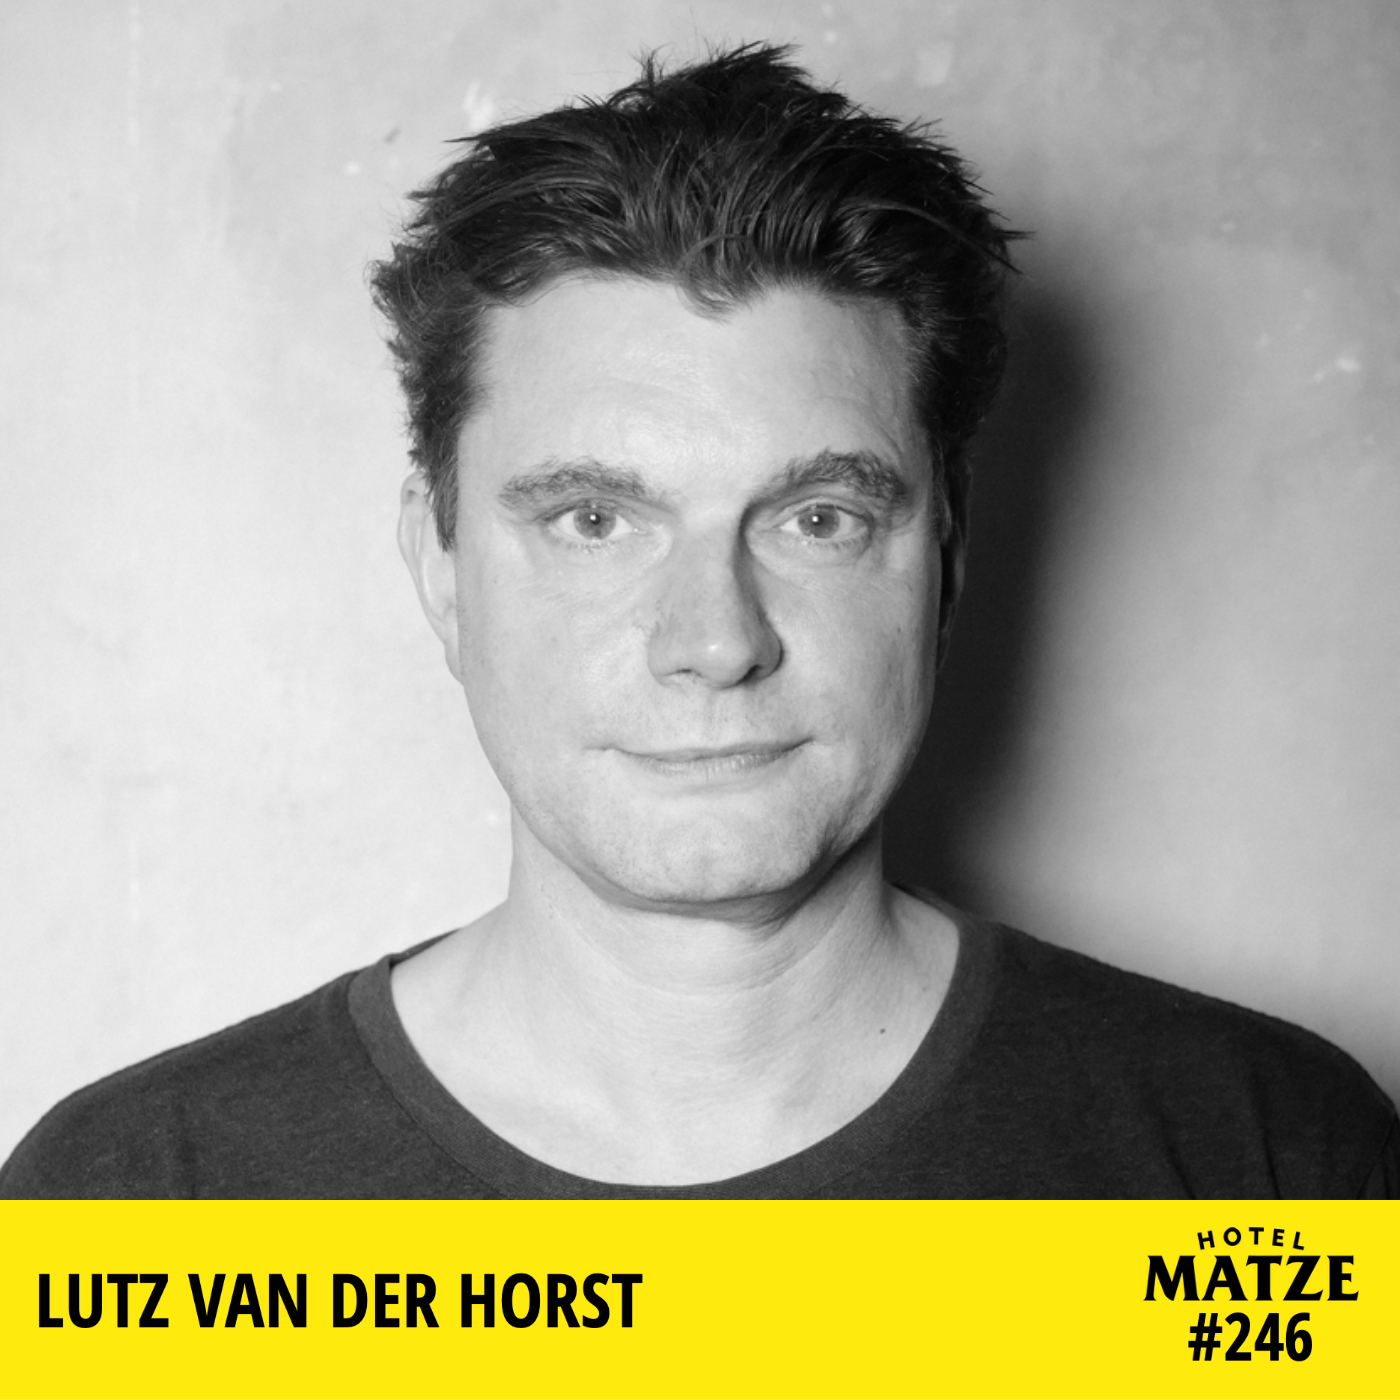 Lutz van der Horst – Wo tut es dir am meisten weh?